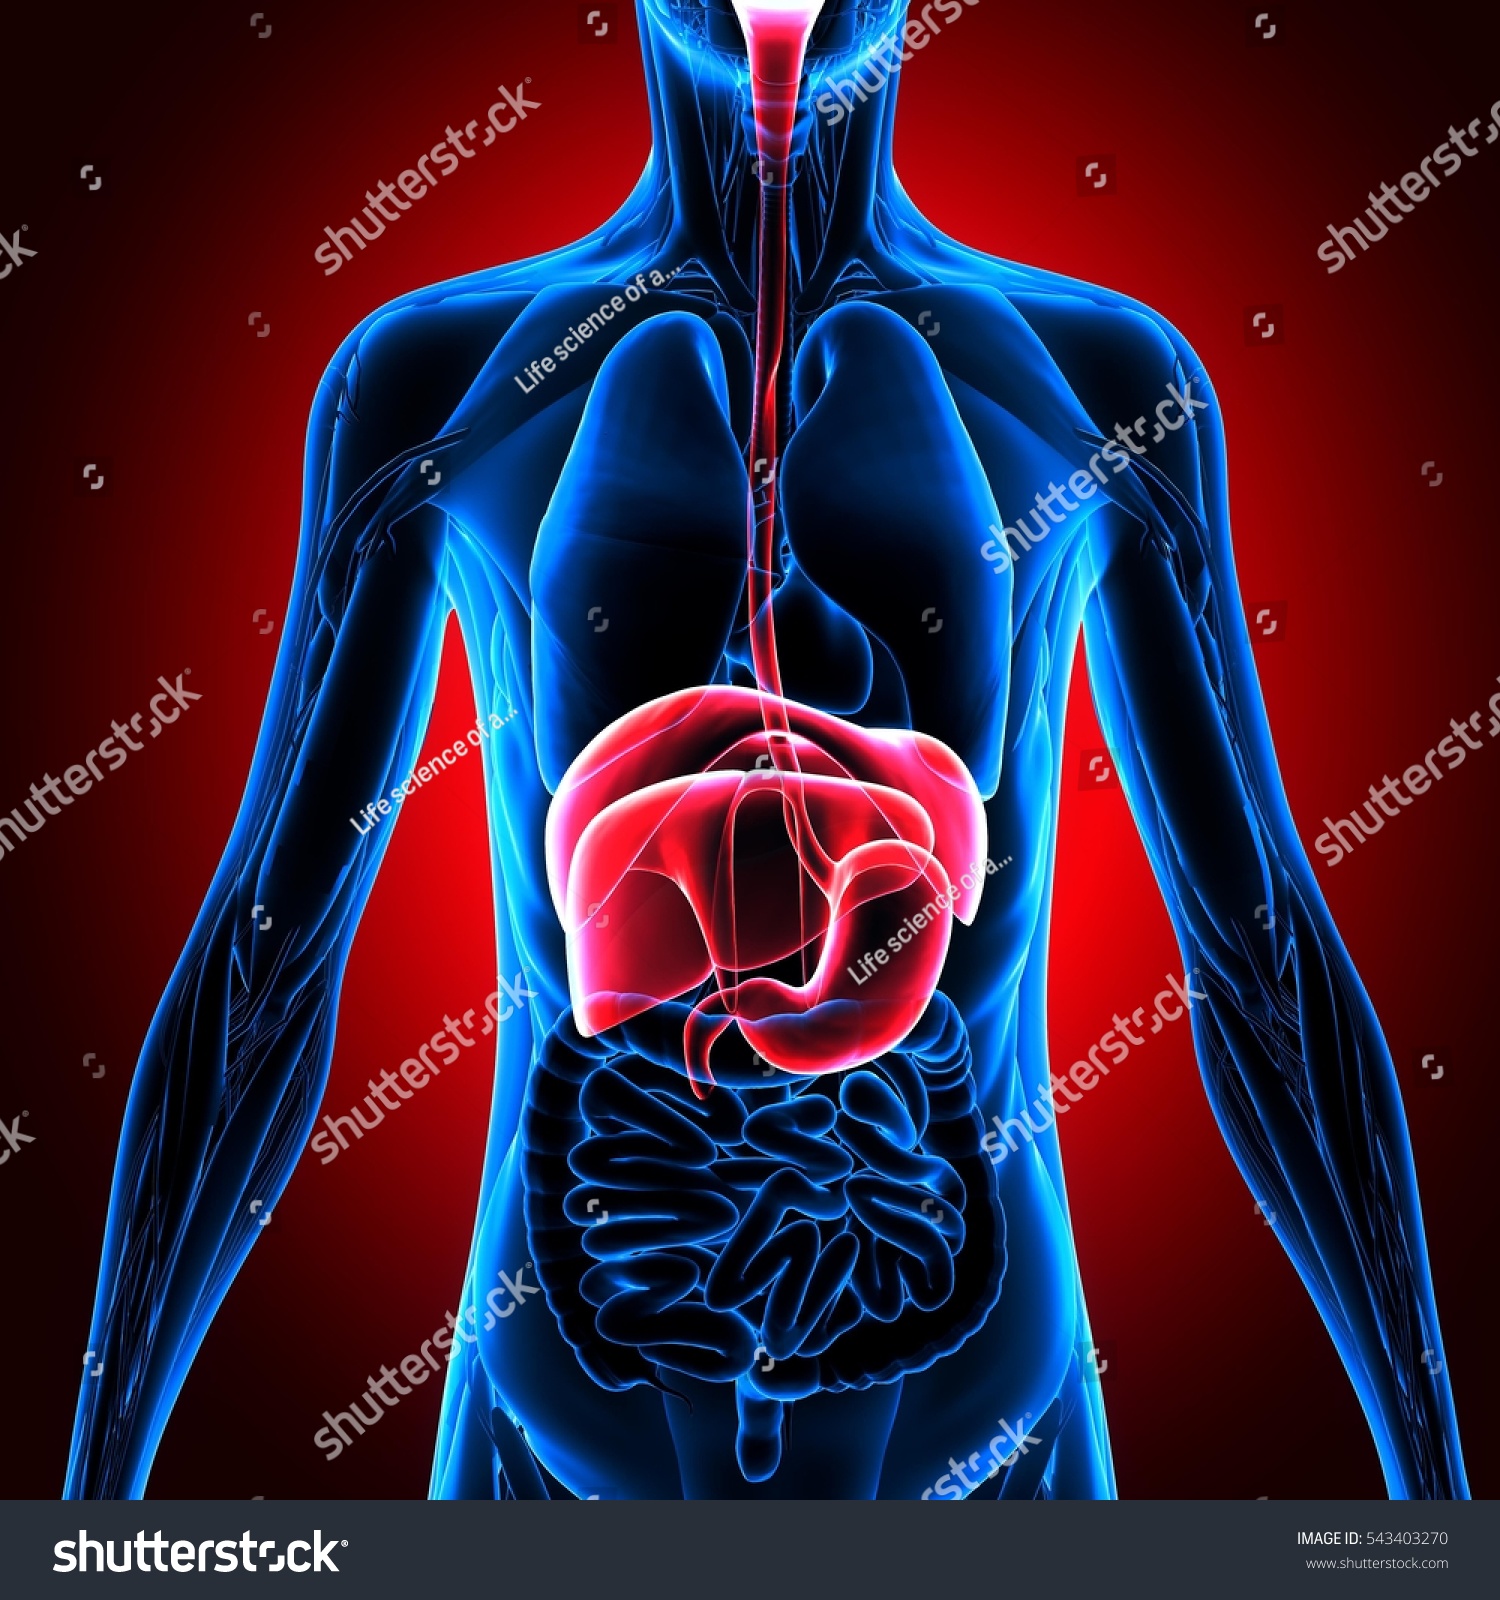 3d Illustration Human Body Organ - 543403270 : Shutterstock